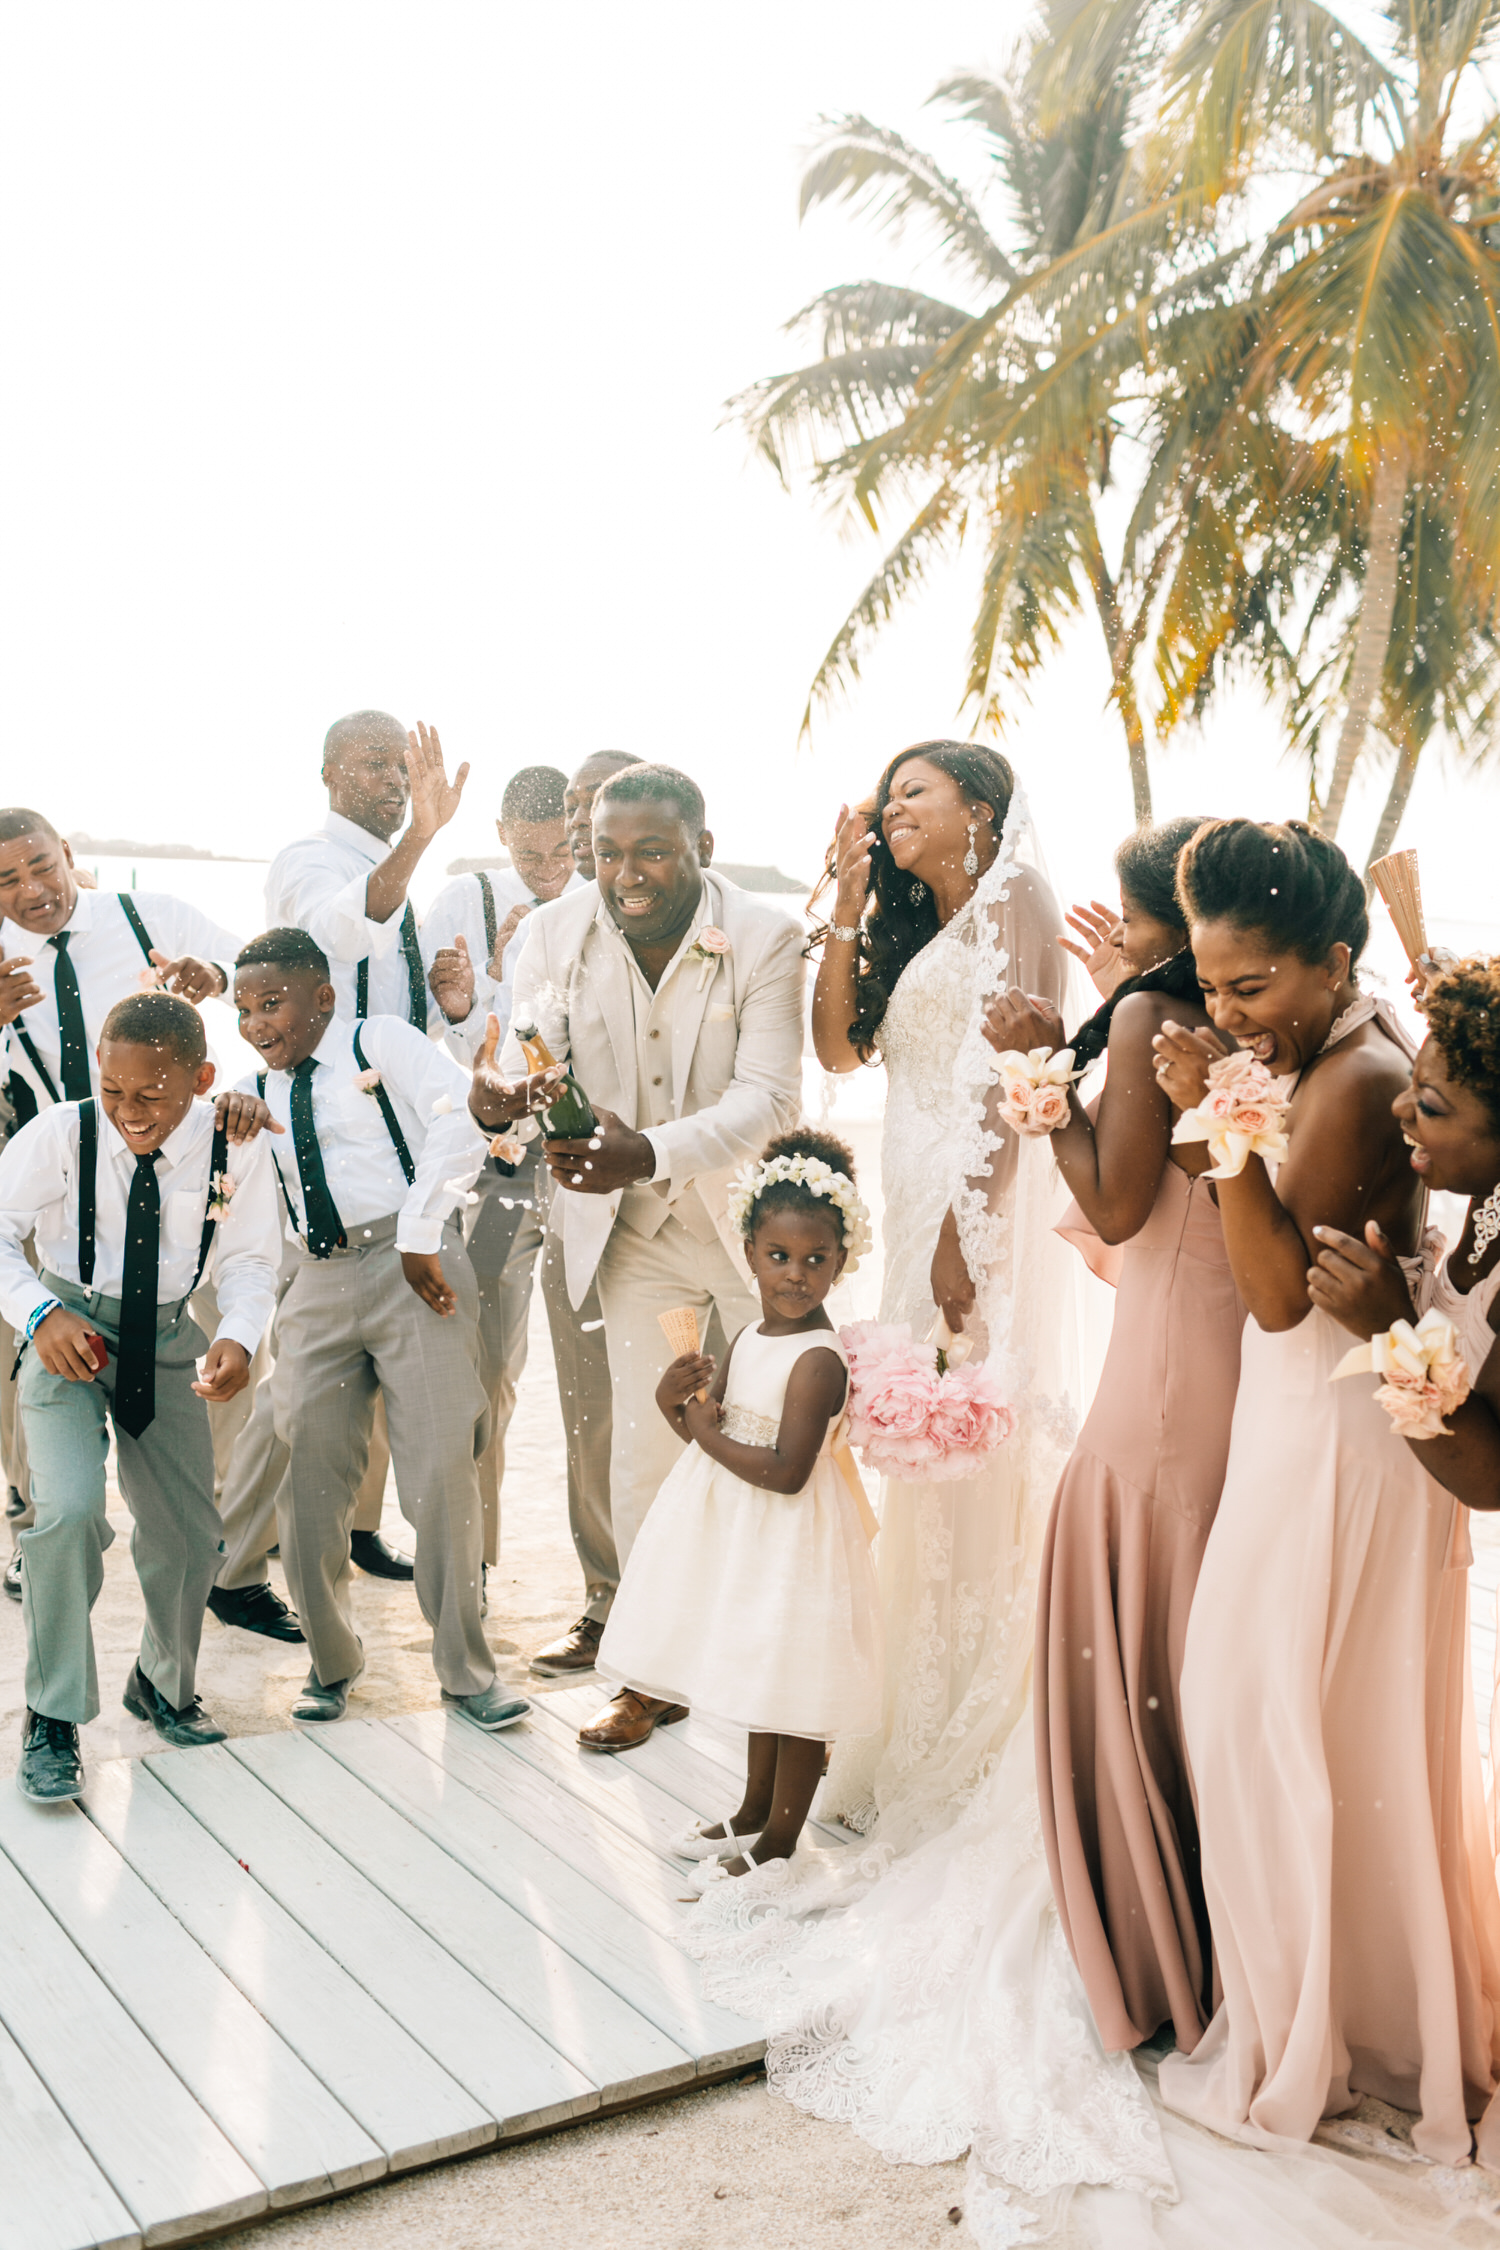 Key Largo Lighthouse Beach Wedding Photography